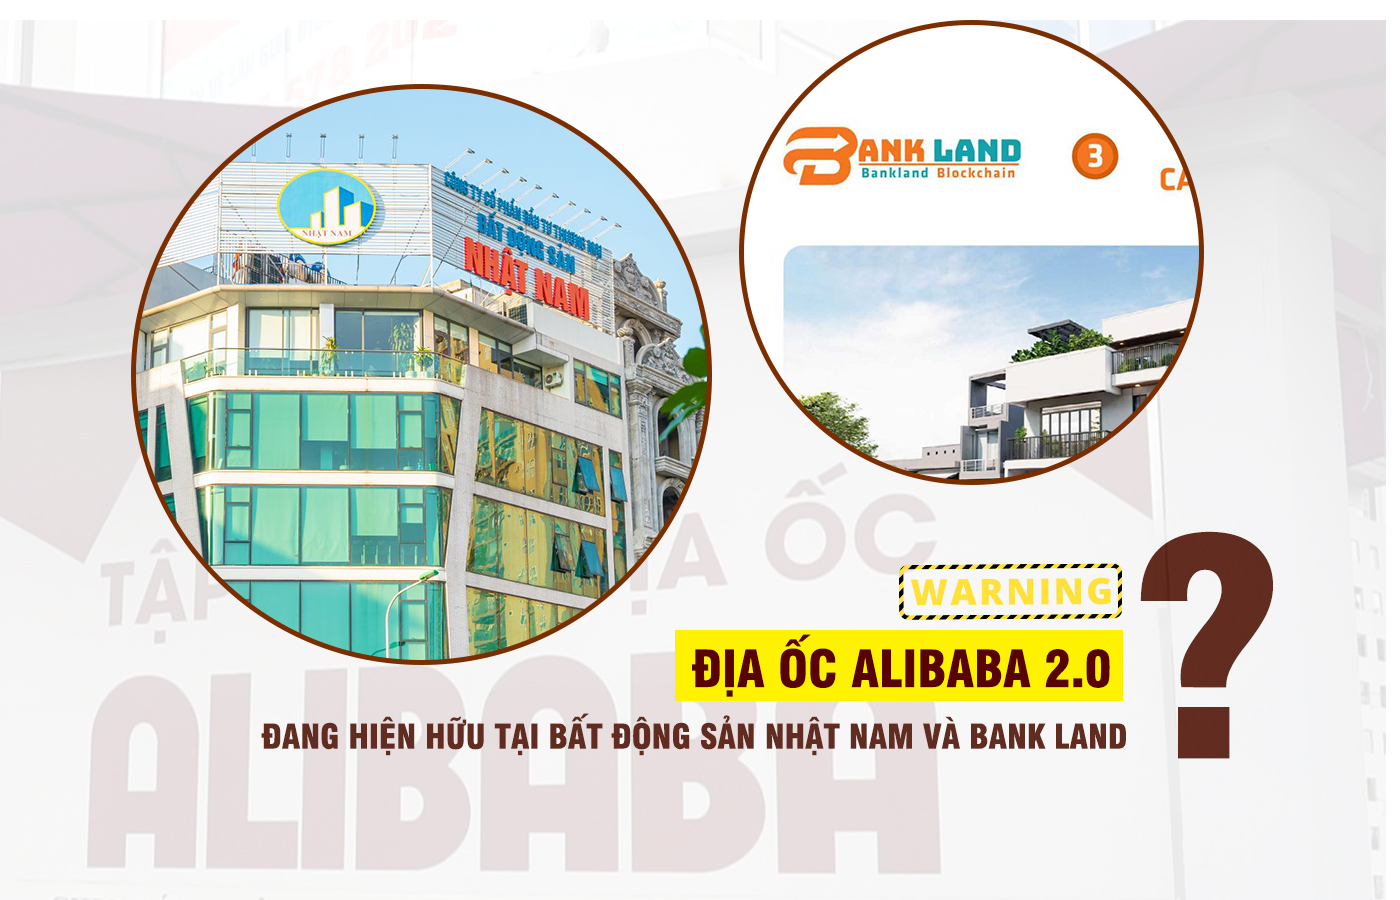 Cảnh báo “Địa ốc Alibaba 2.0” đang hiện hữu tại Bất động sản Nhật Nam và Bank Land?